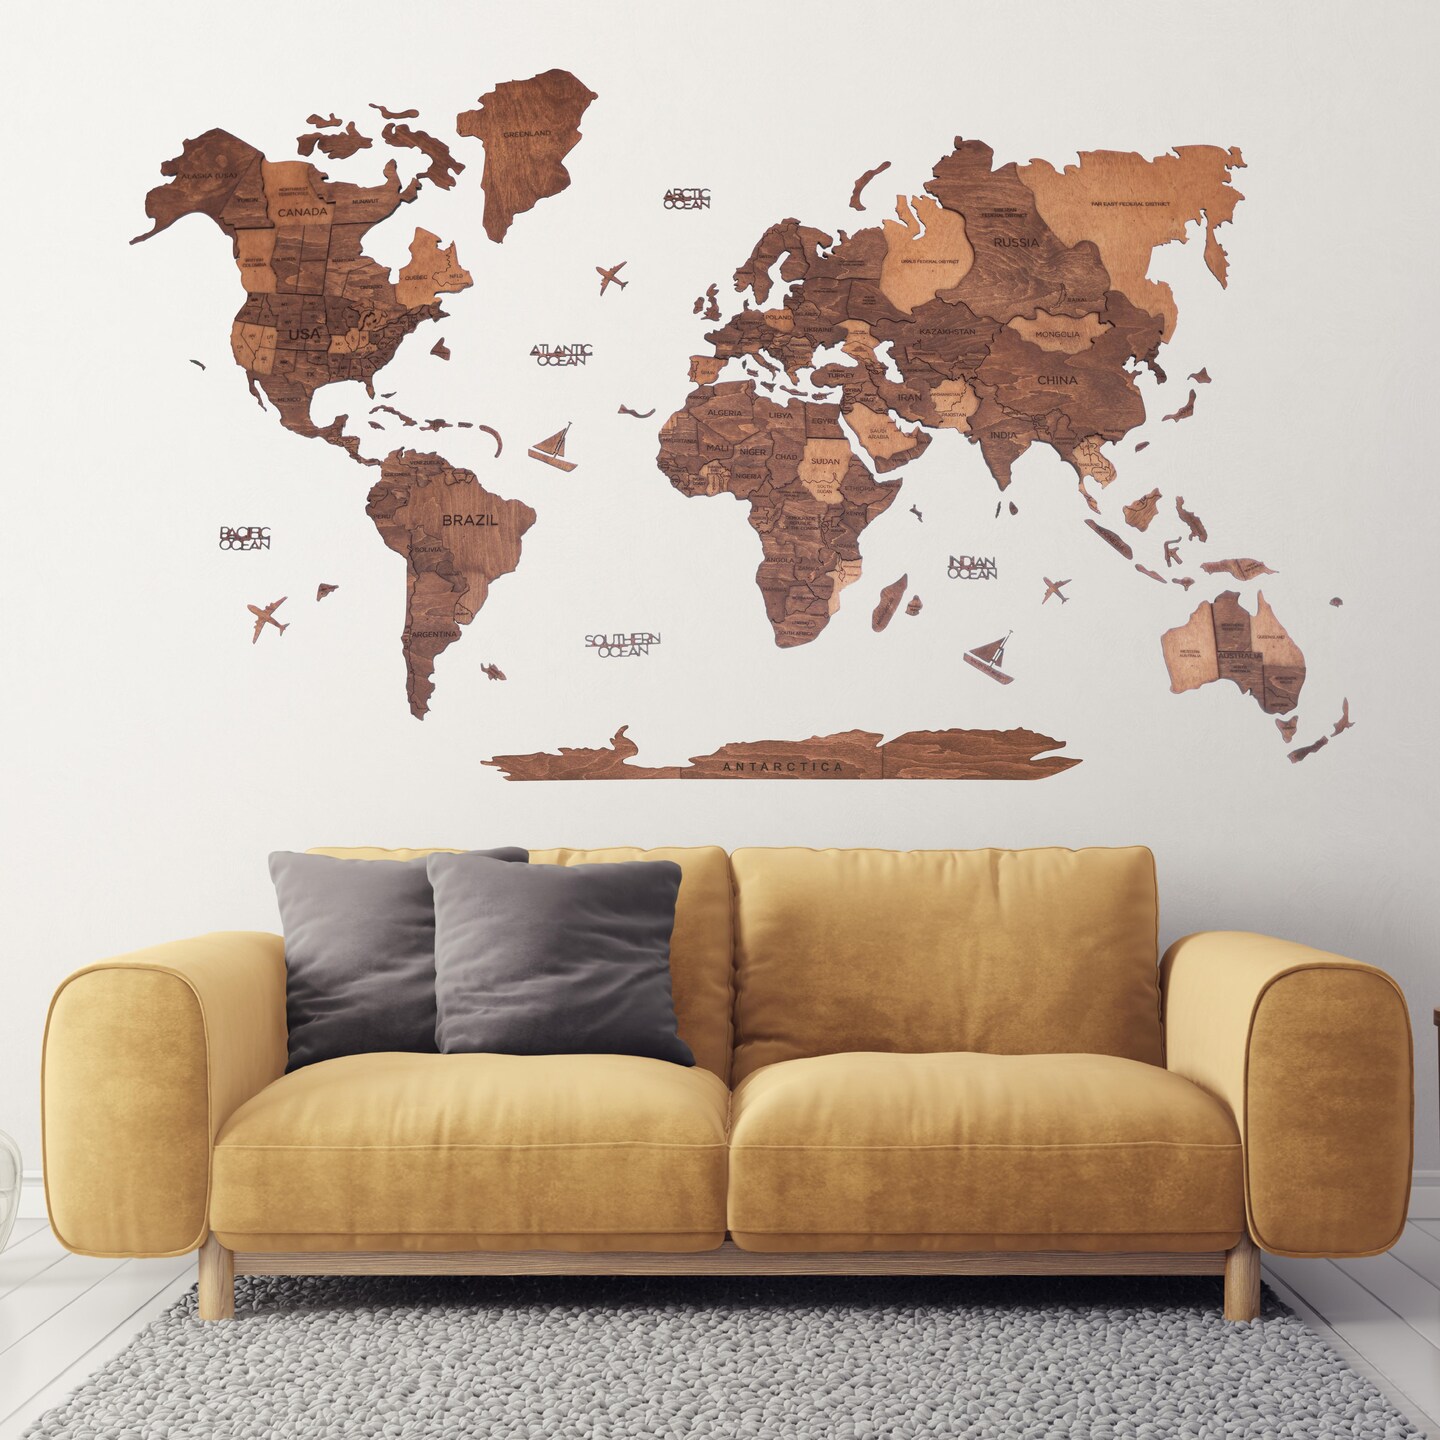 World Map, Wood Map, Wall Art Decor, Wooden World Map, 3D World Map